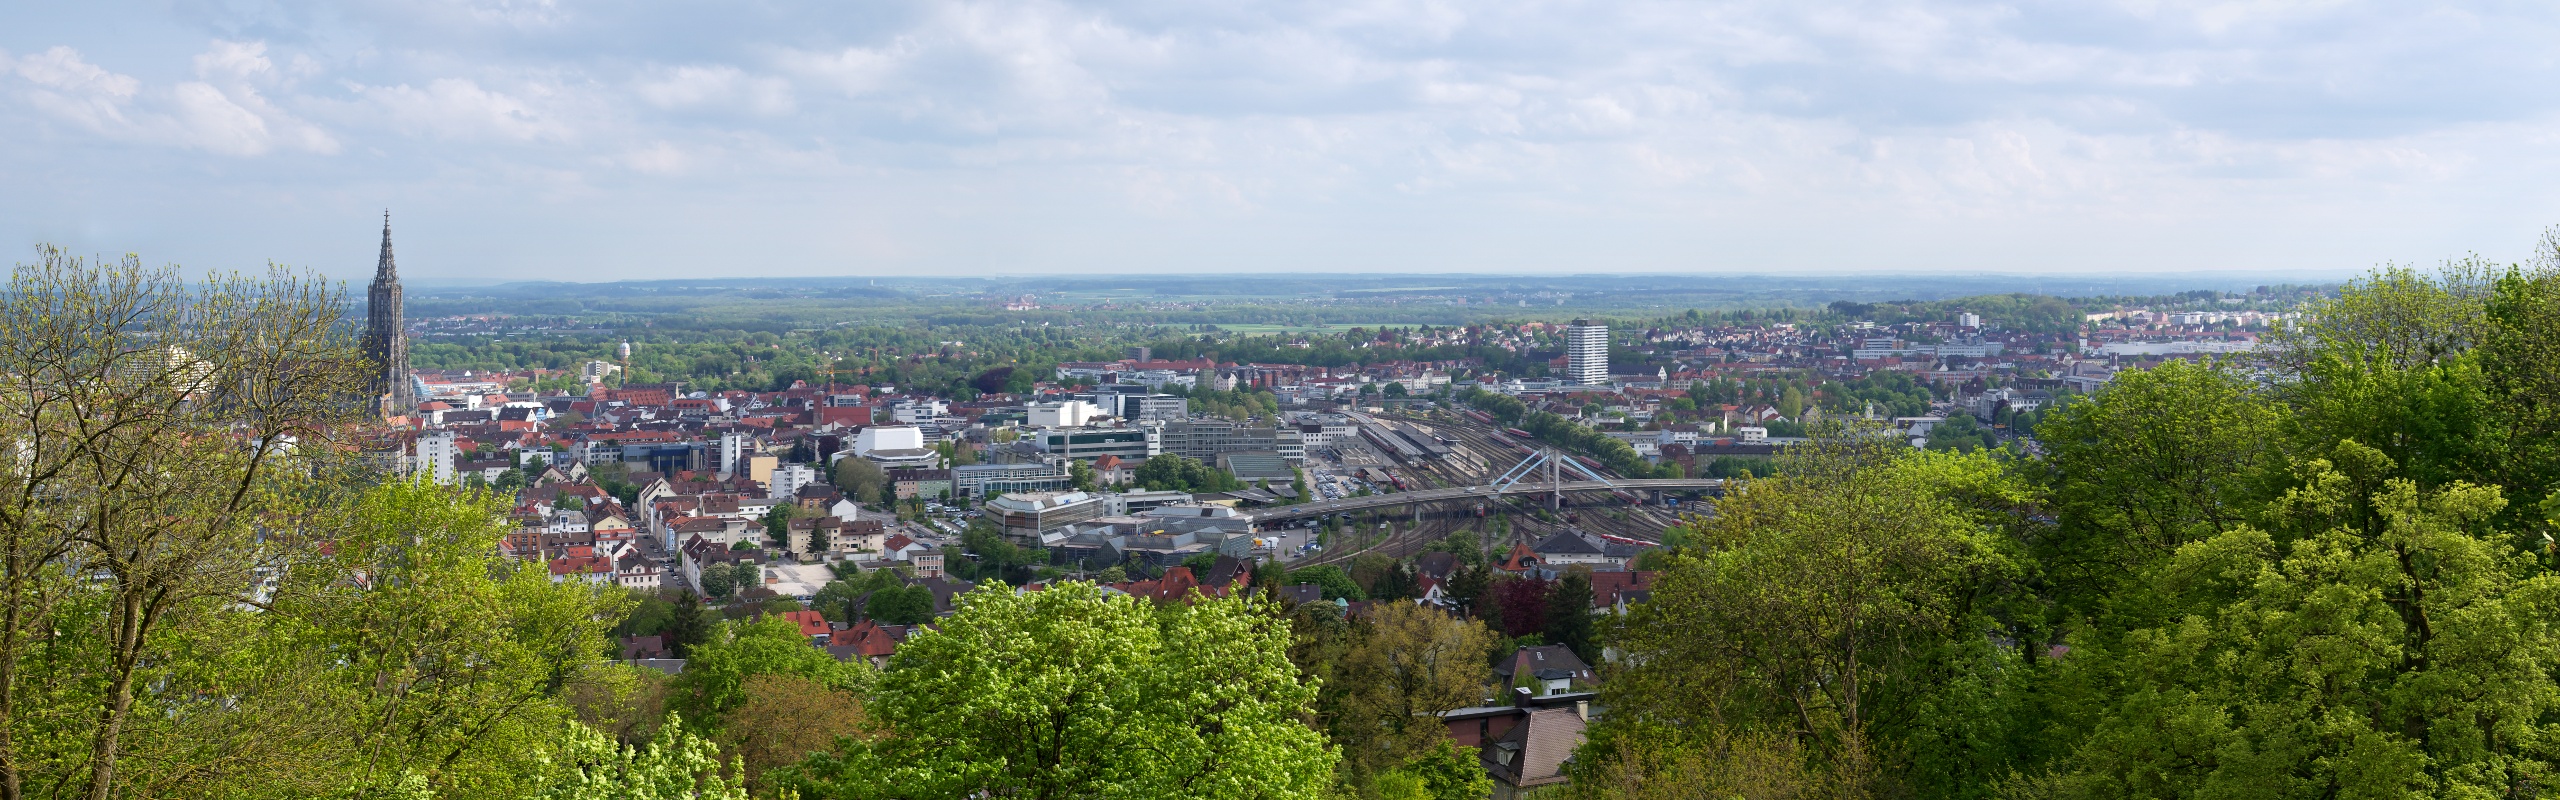 Blick auf Ulm vom Michelsberg